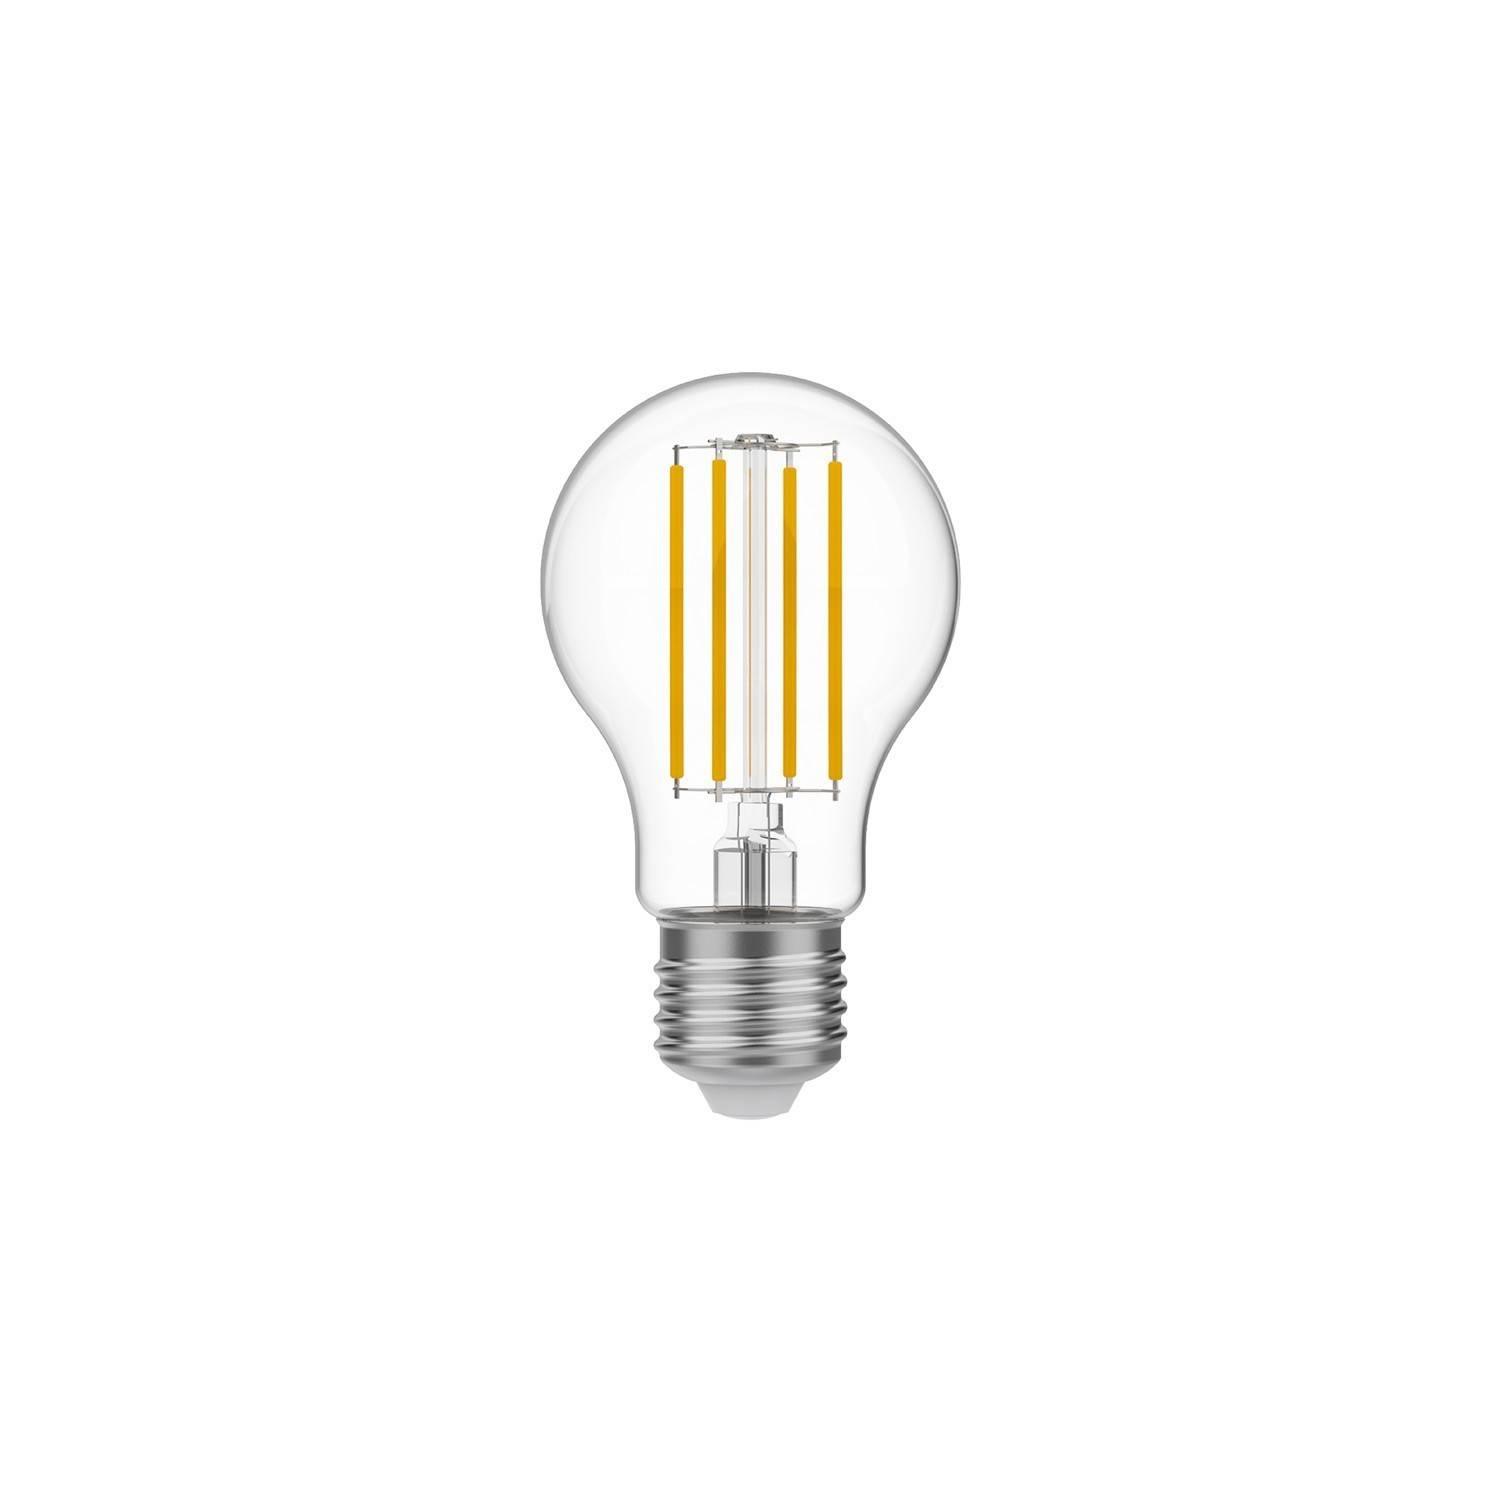 Lâmpada LED Transparente A60 7W 806Lm E27 3500K Regulável - N01